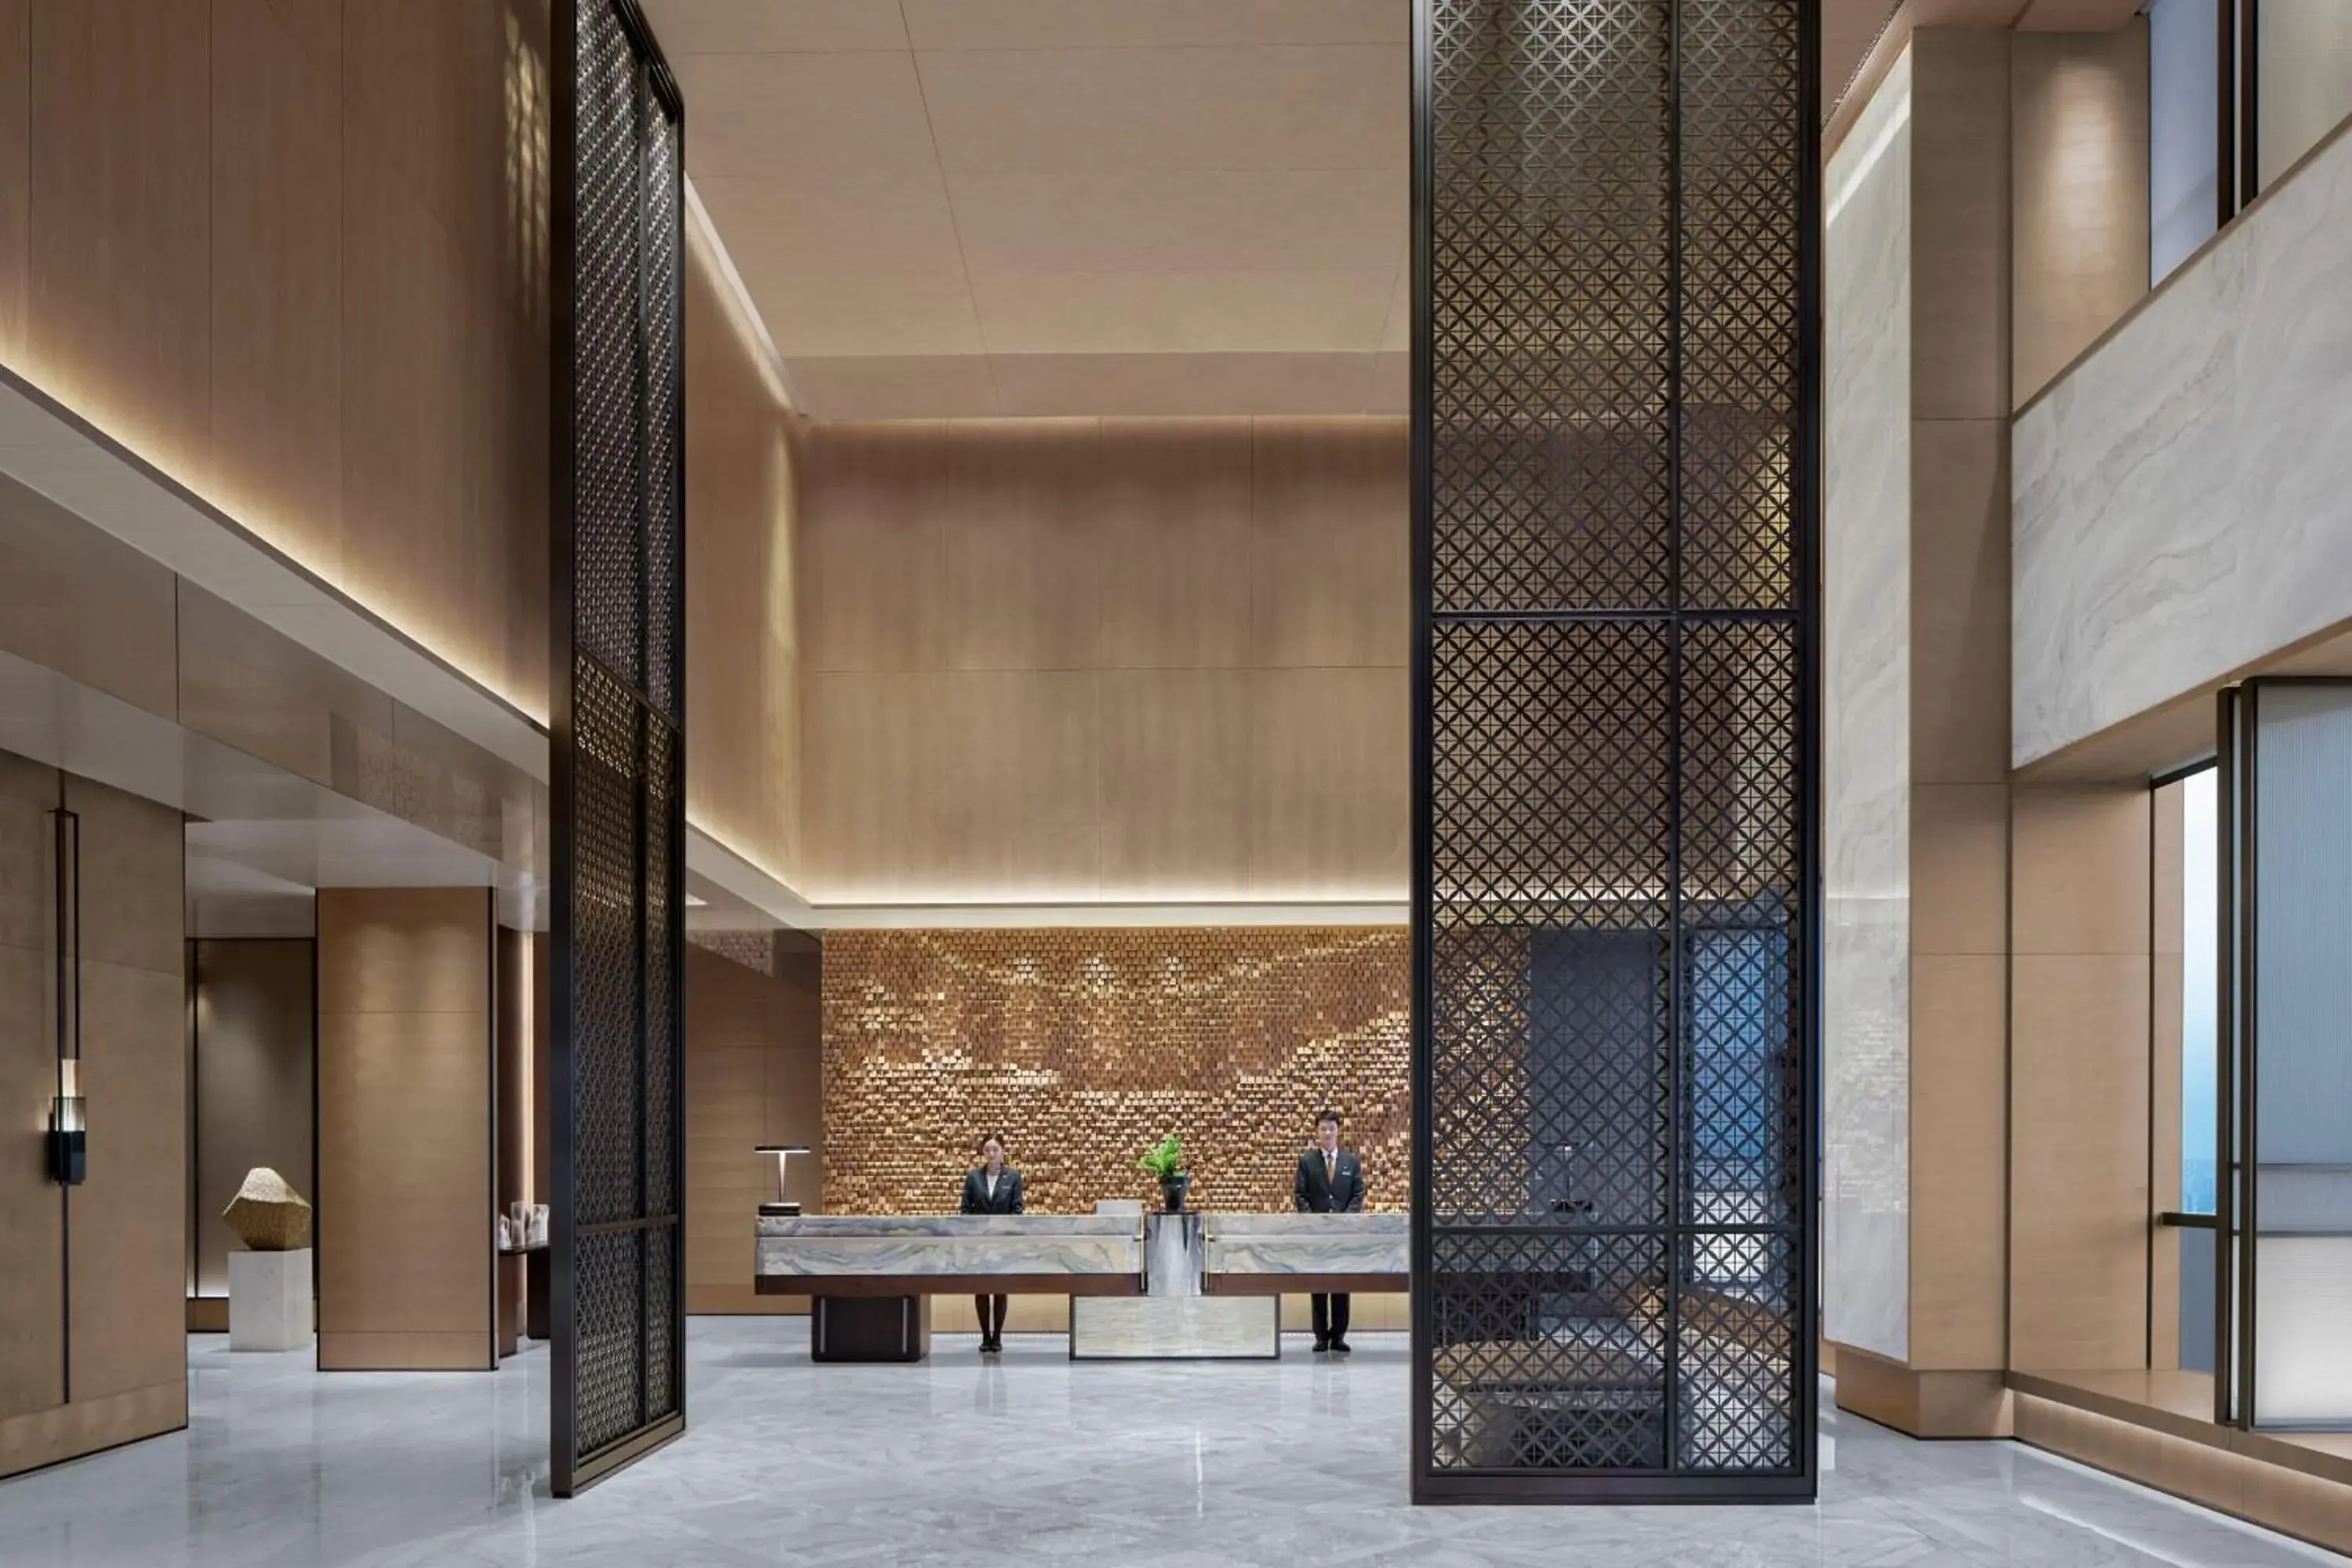 Lobby or reception in JW Marriott Hotel Changsha